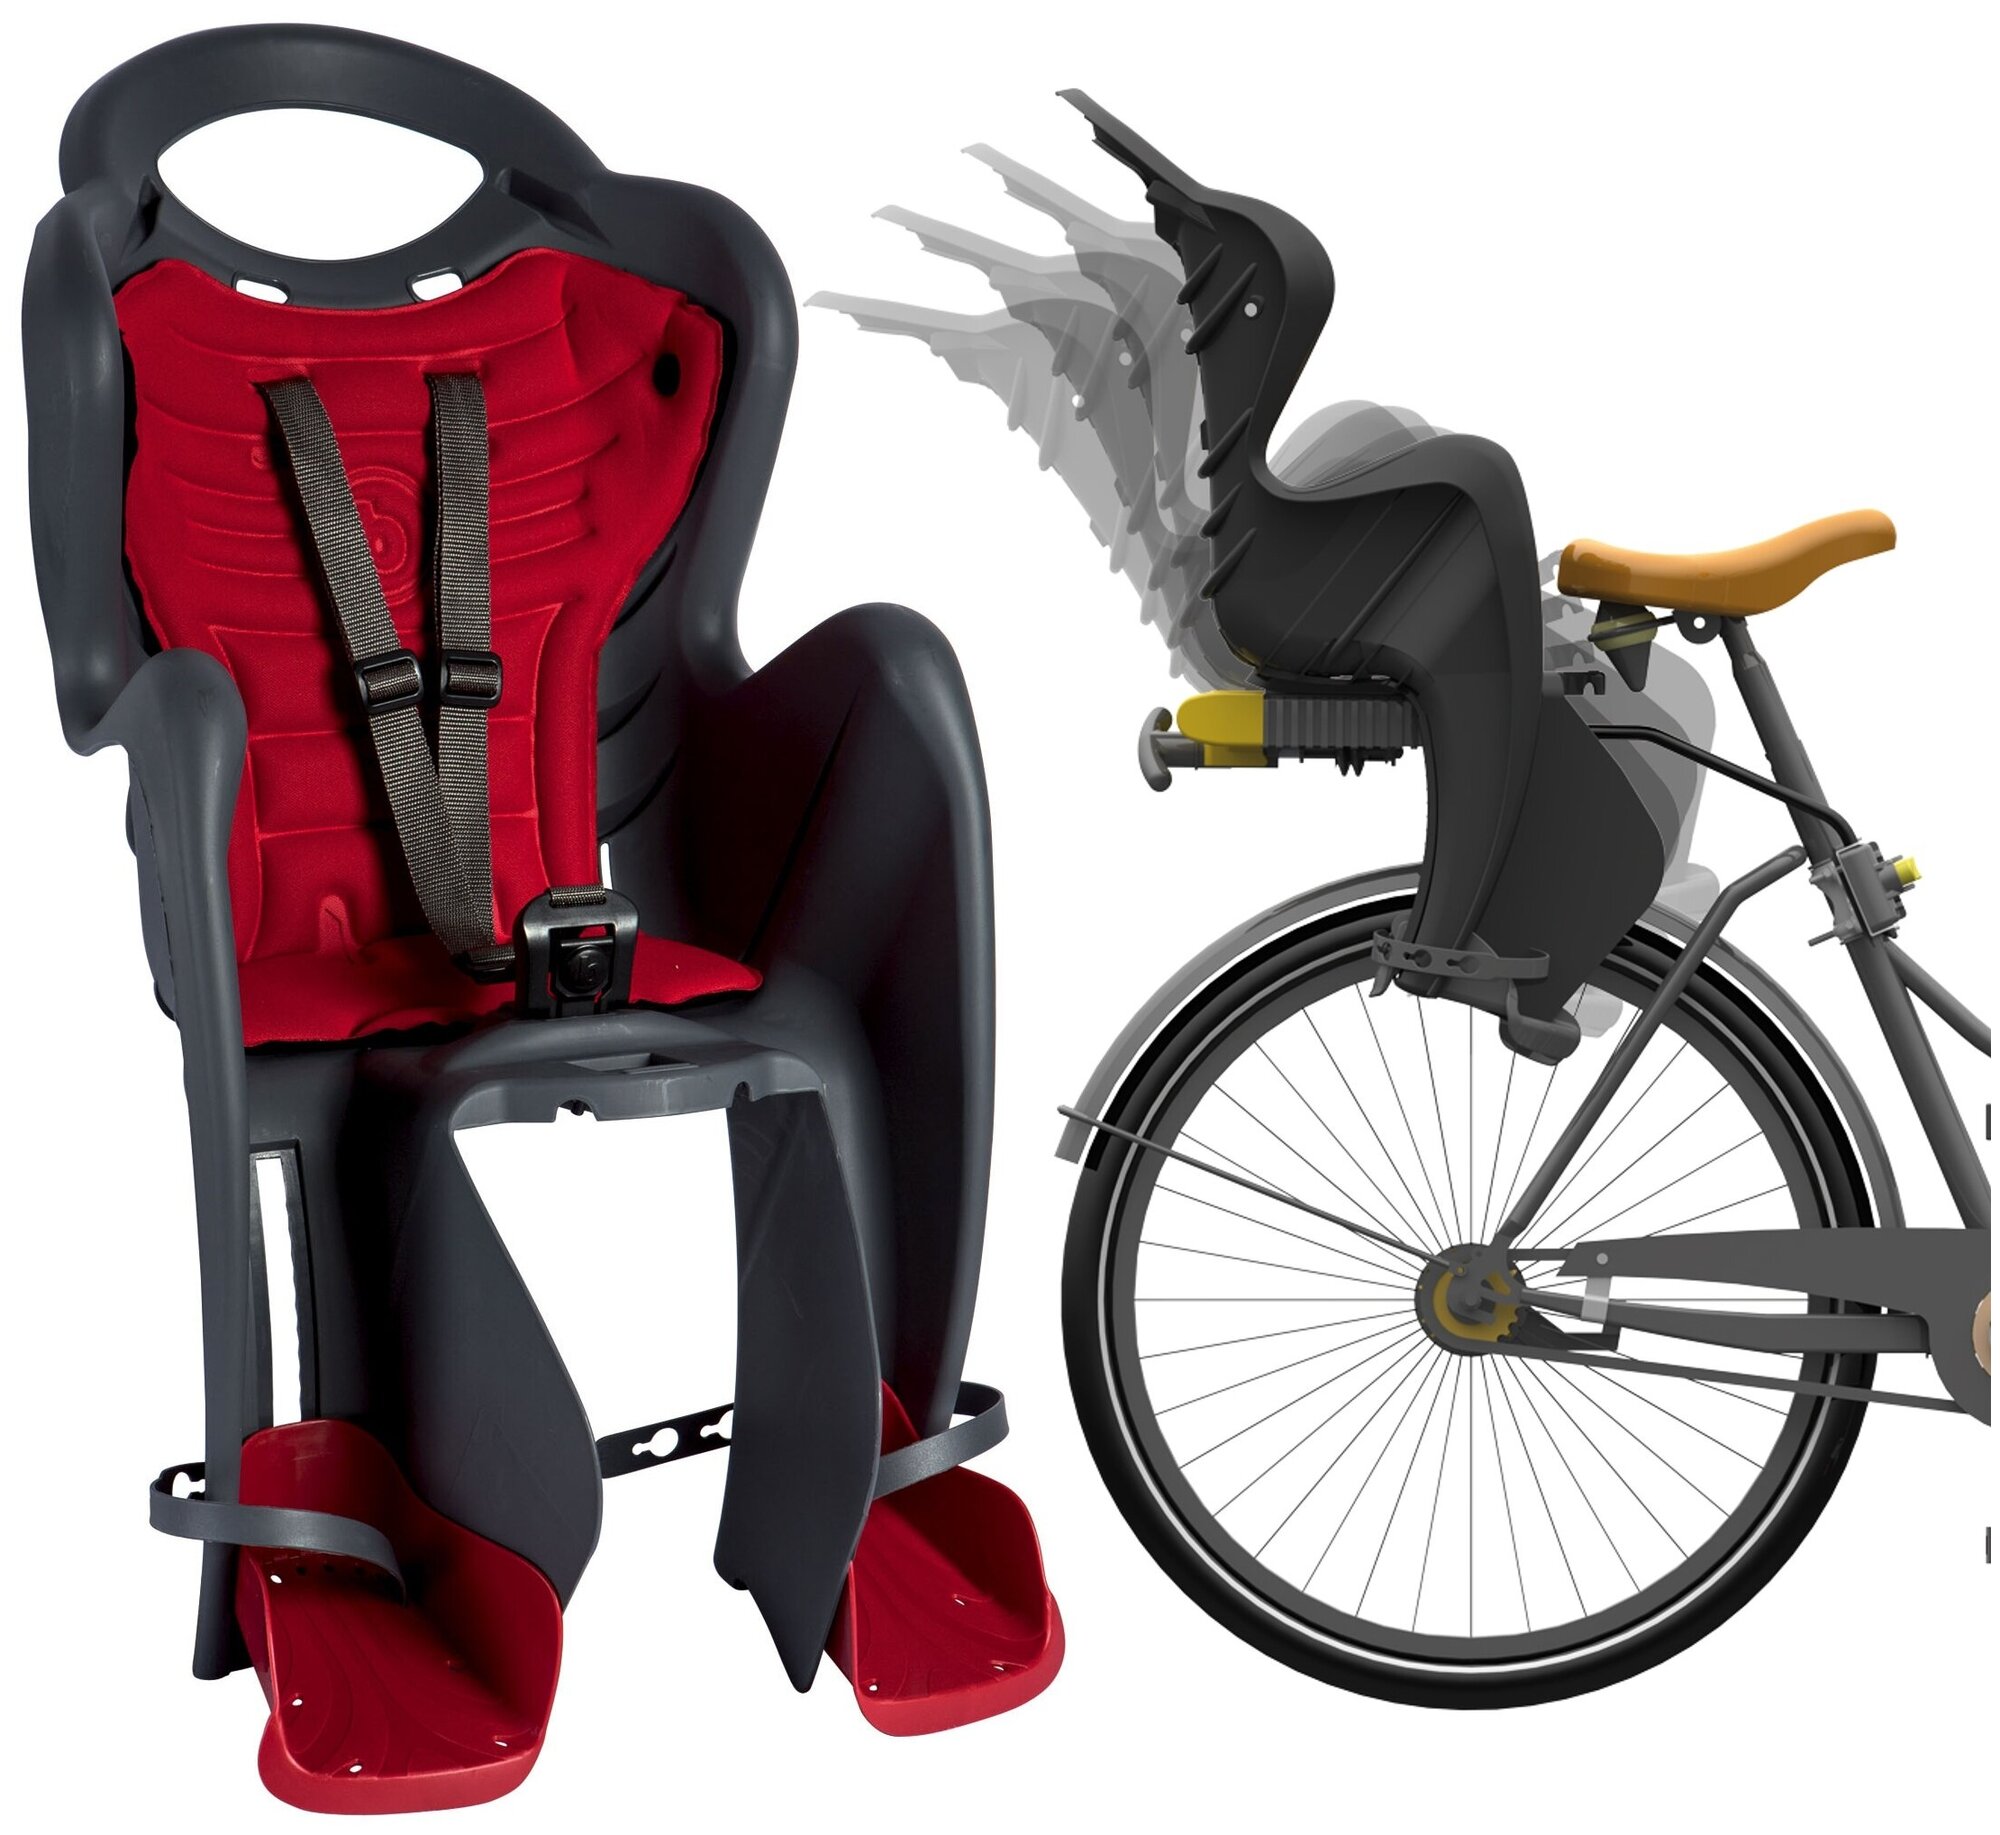  кресло для велосипеда детское - фото